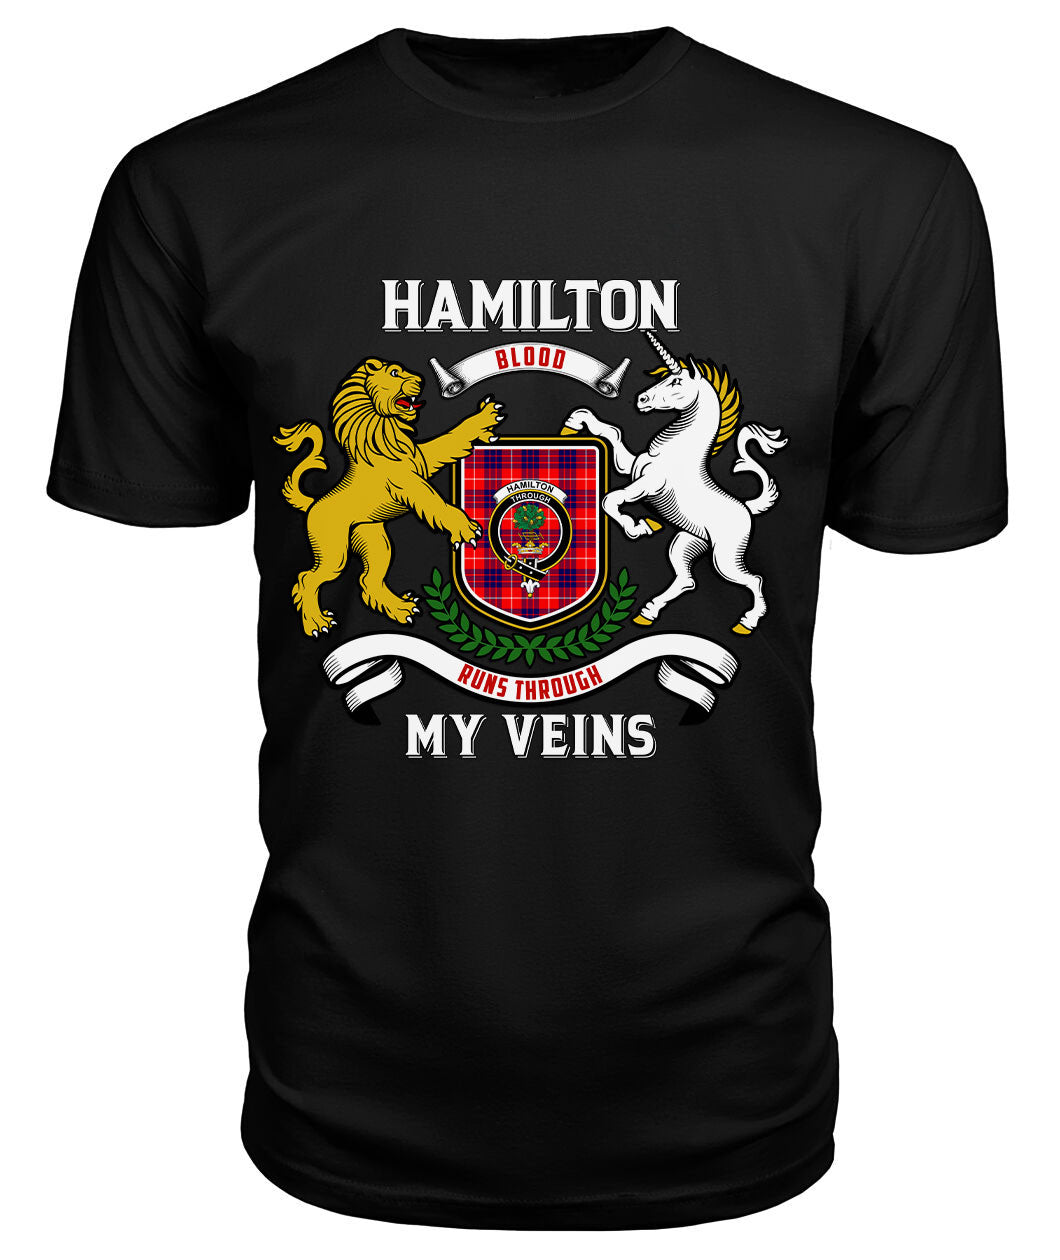 Hamilton Modern Tartan Crest 2D T-shirt - Blood Runs Through My Veins Style